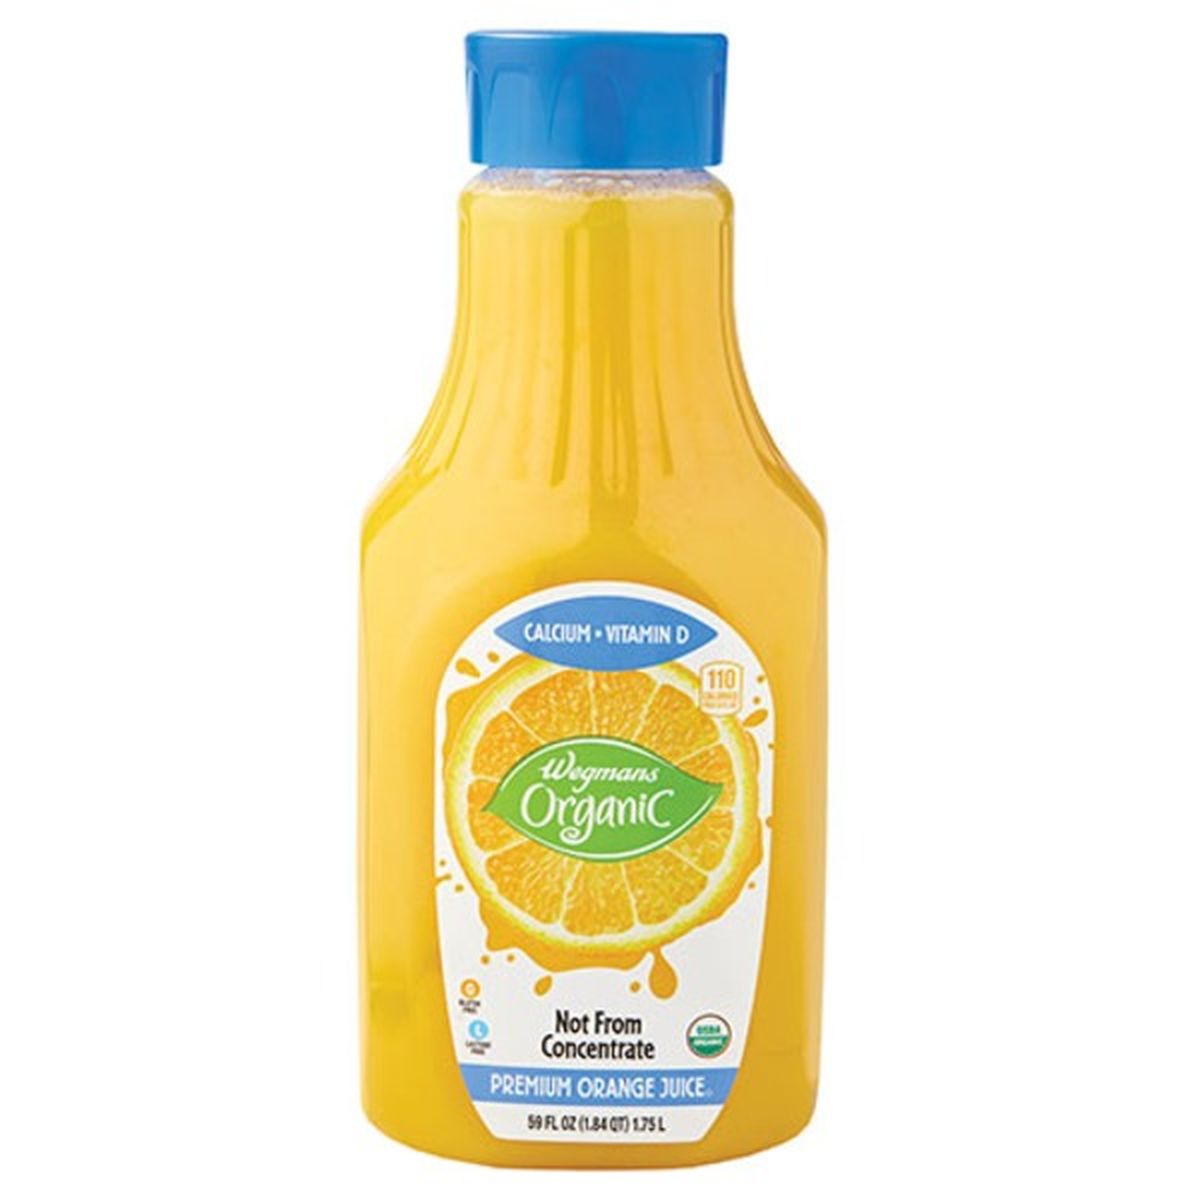 Calories in Wegmans Organic Premium Orange Juice, Calcium & Vitamin D